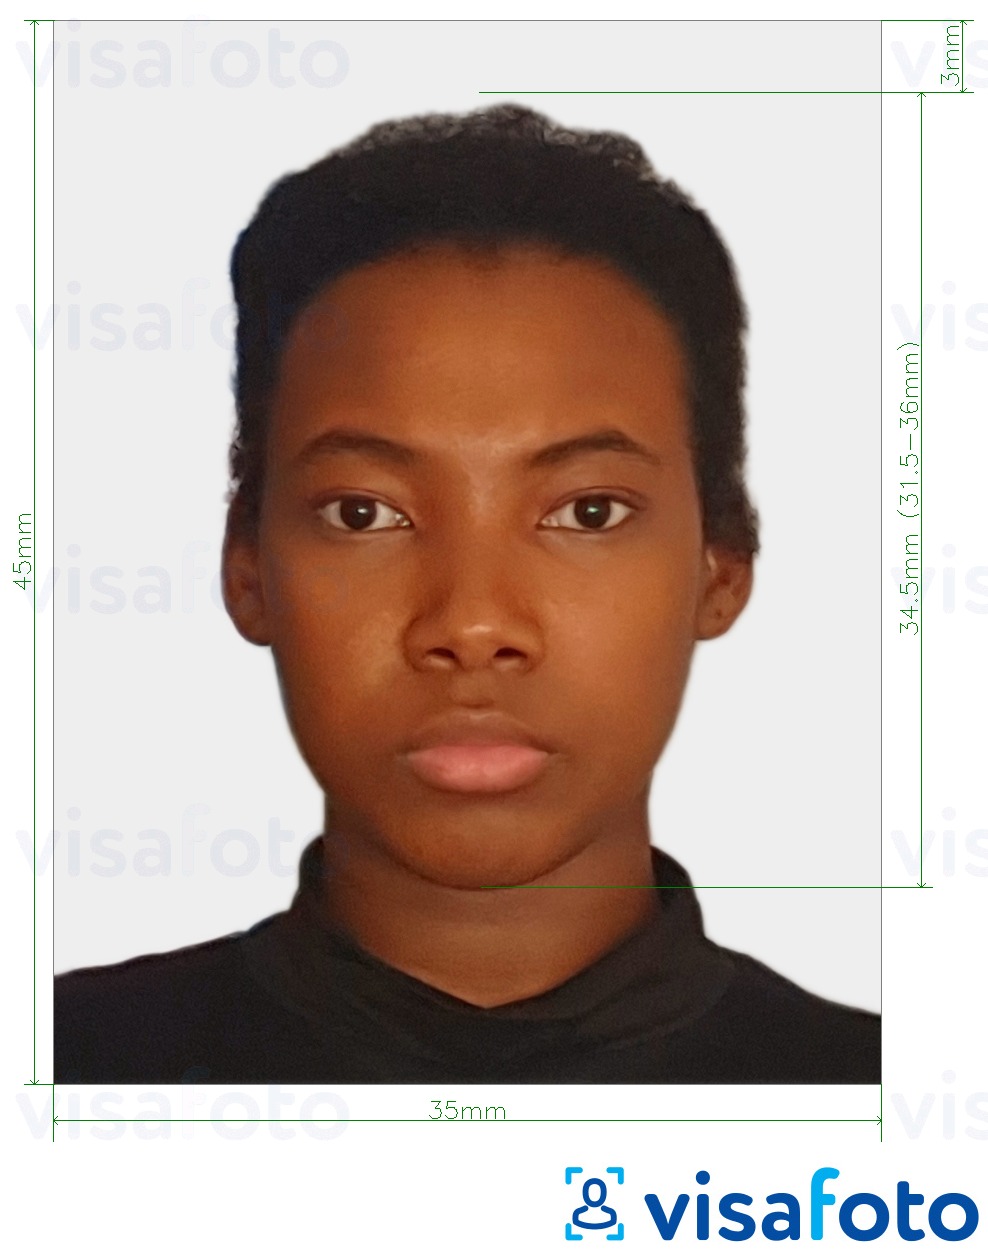 Contoh foto untuk Suriname visa 45x35 mm (1.77x1.37 inci) dengan spesifikasi saiz yang tepat.